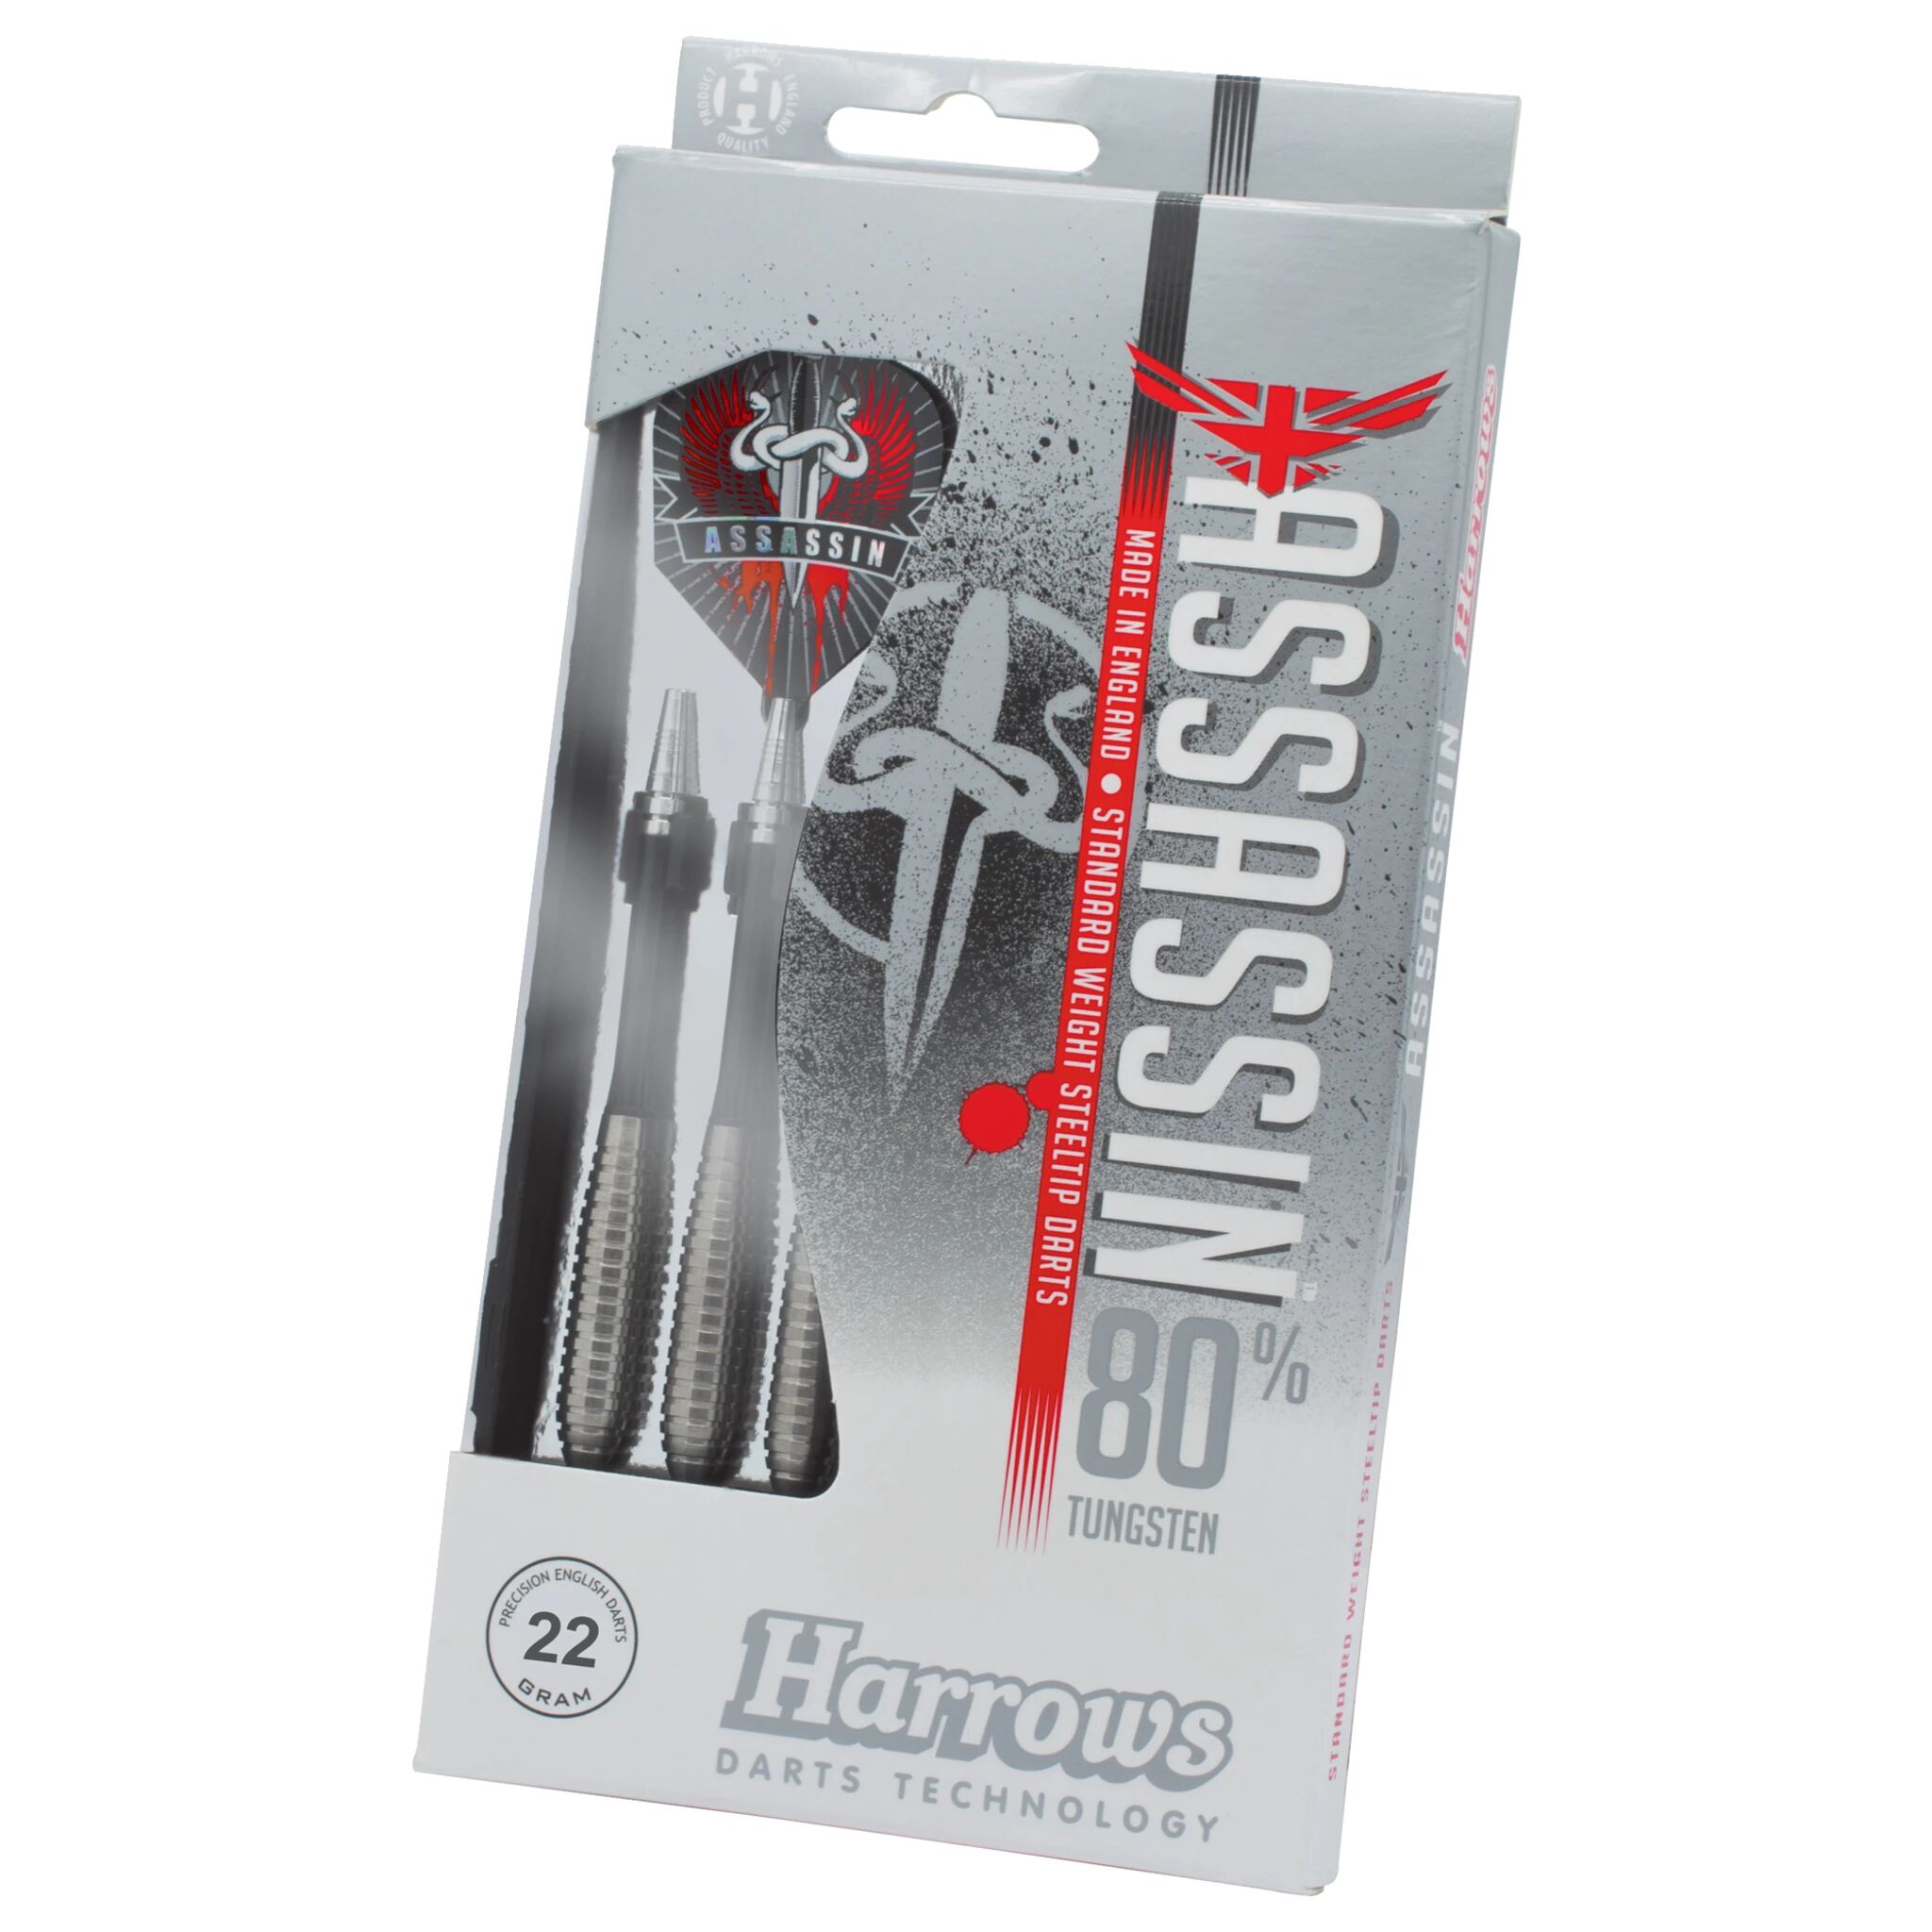 Harrows Assassin, dartpiler 22g Tungsten